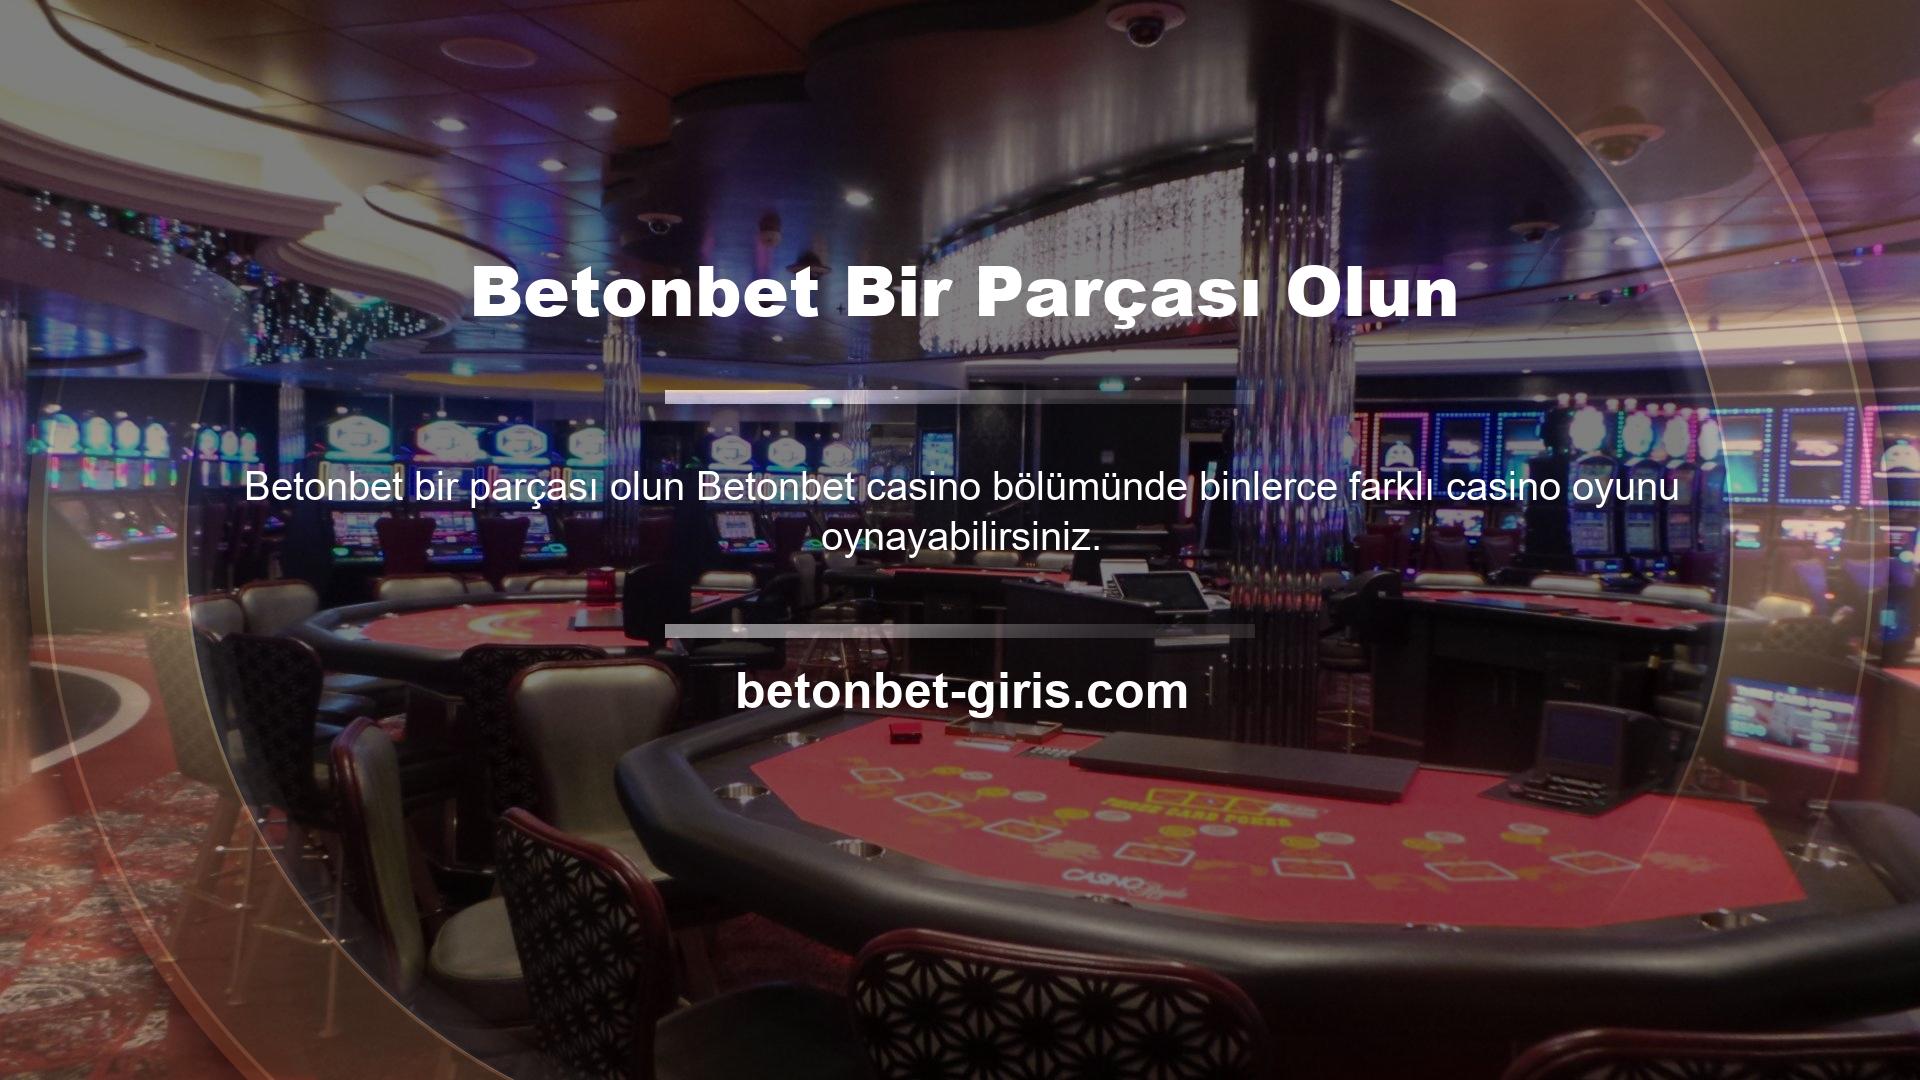 Casino tutkunlarının buluşma noktası olan Betonbet sunulan eğlenceli ve kazançlı oyunlar ile üyeler kazançlı bir gün geçiriyor